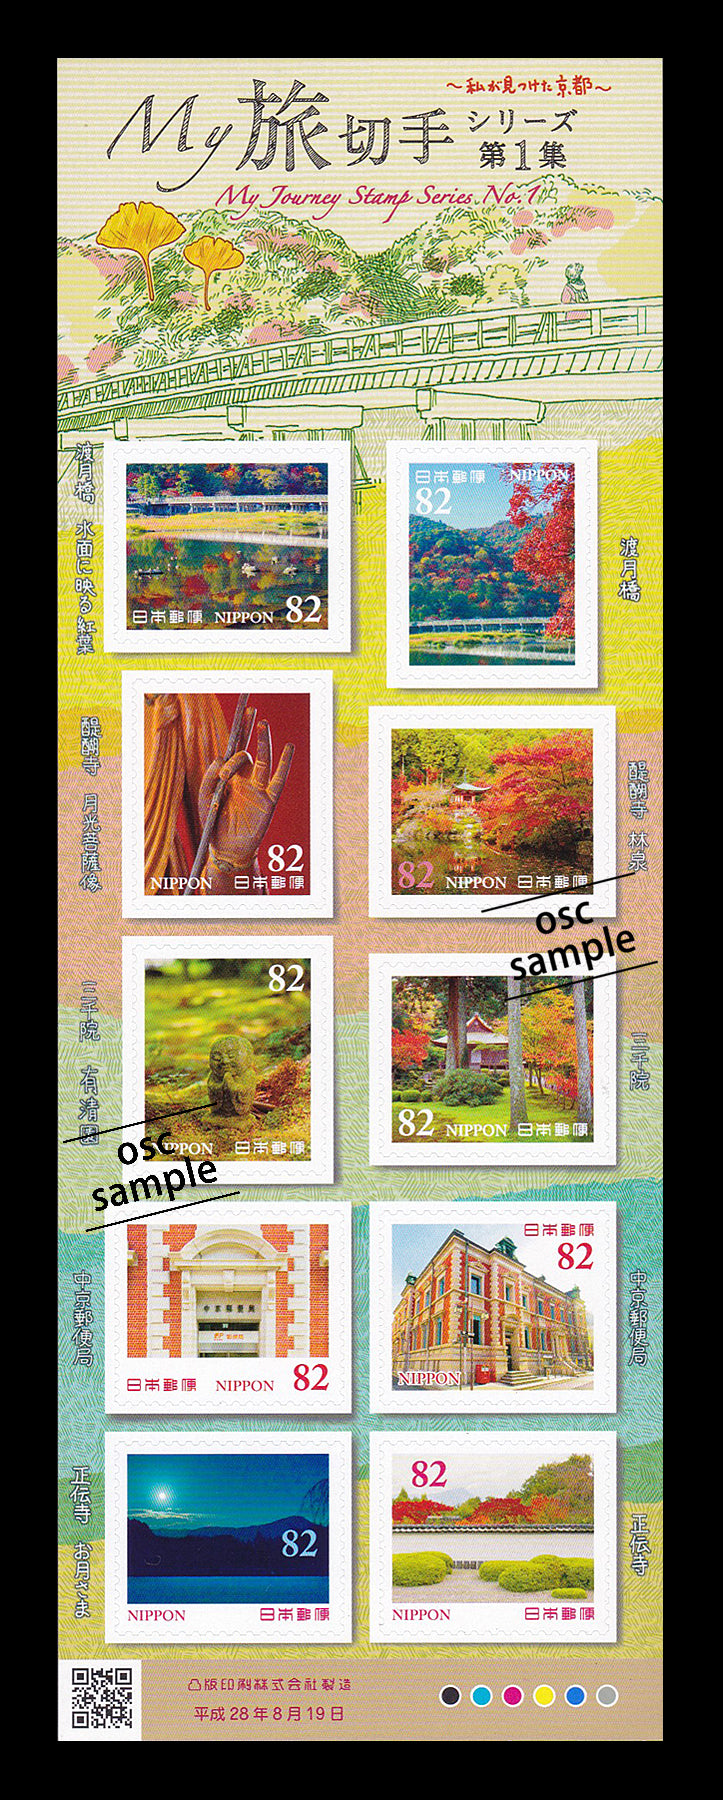 Kyoto (My Journey Stamp Series No.1) 京都 (82 yen)